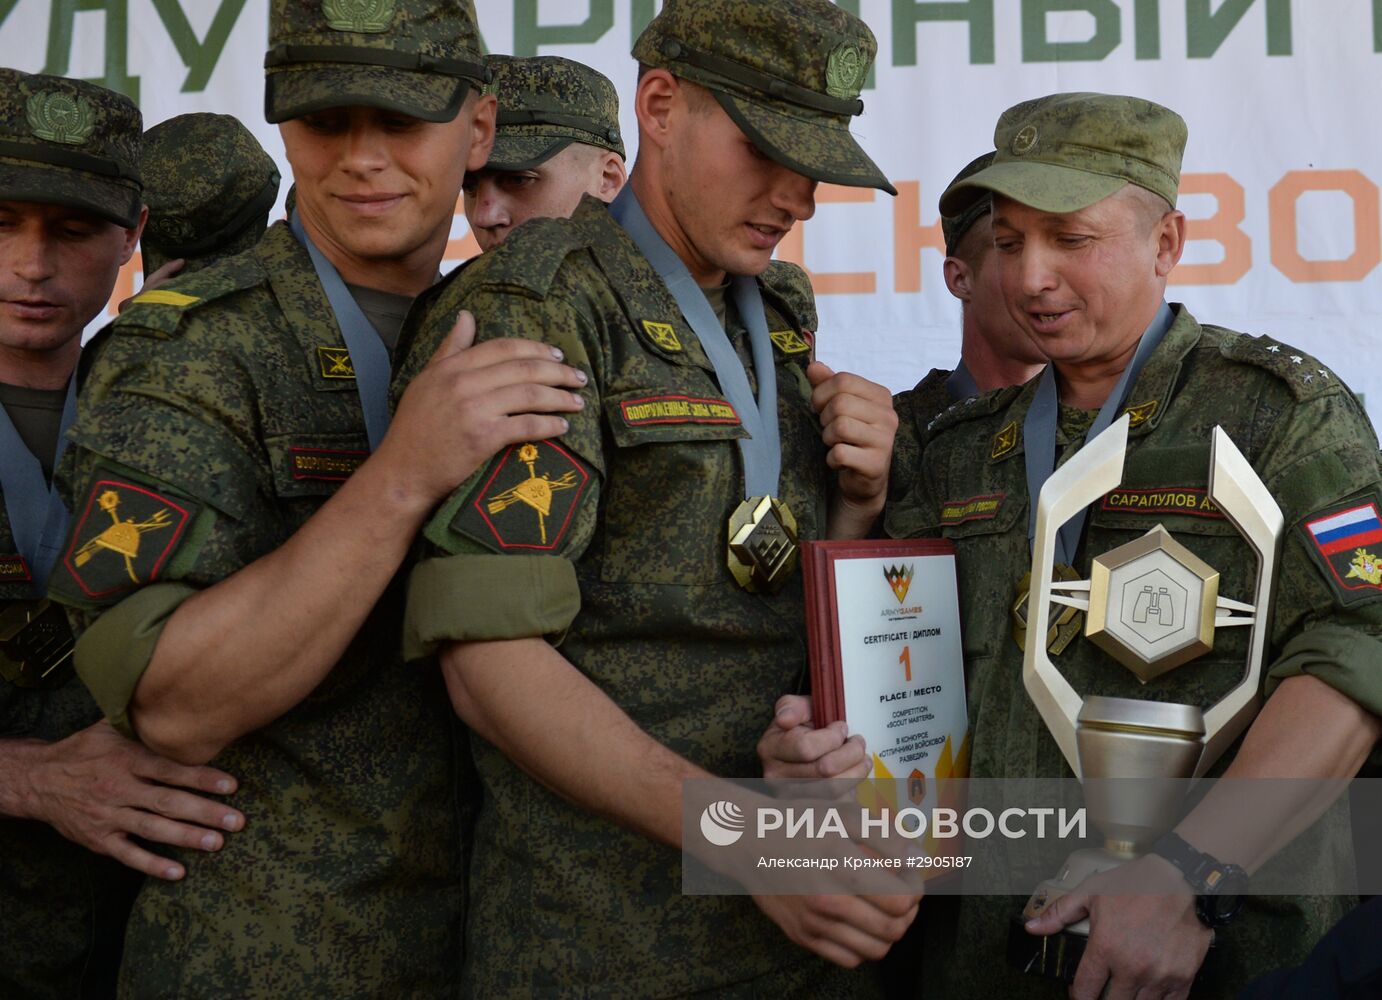 Церемония закрытия "Отличников войсковой разведки" в Новосибирской области